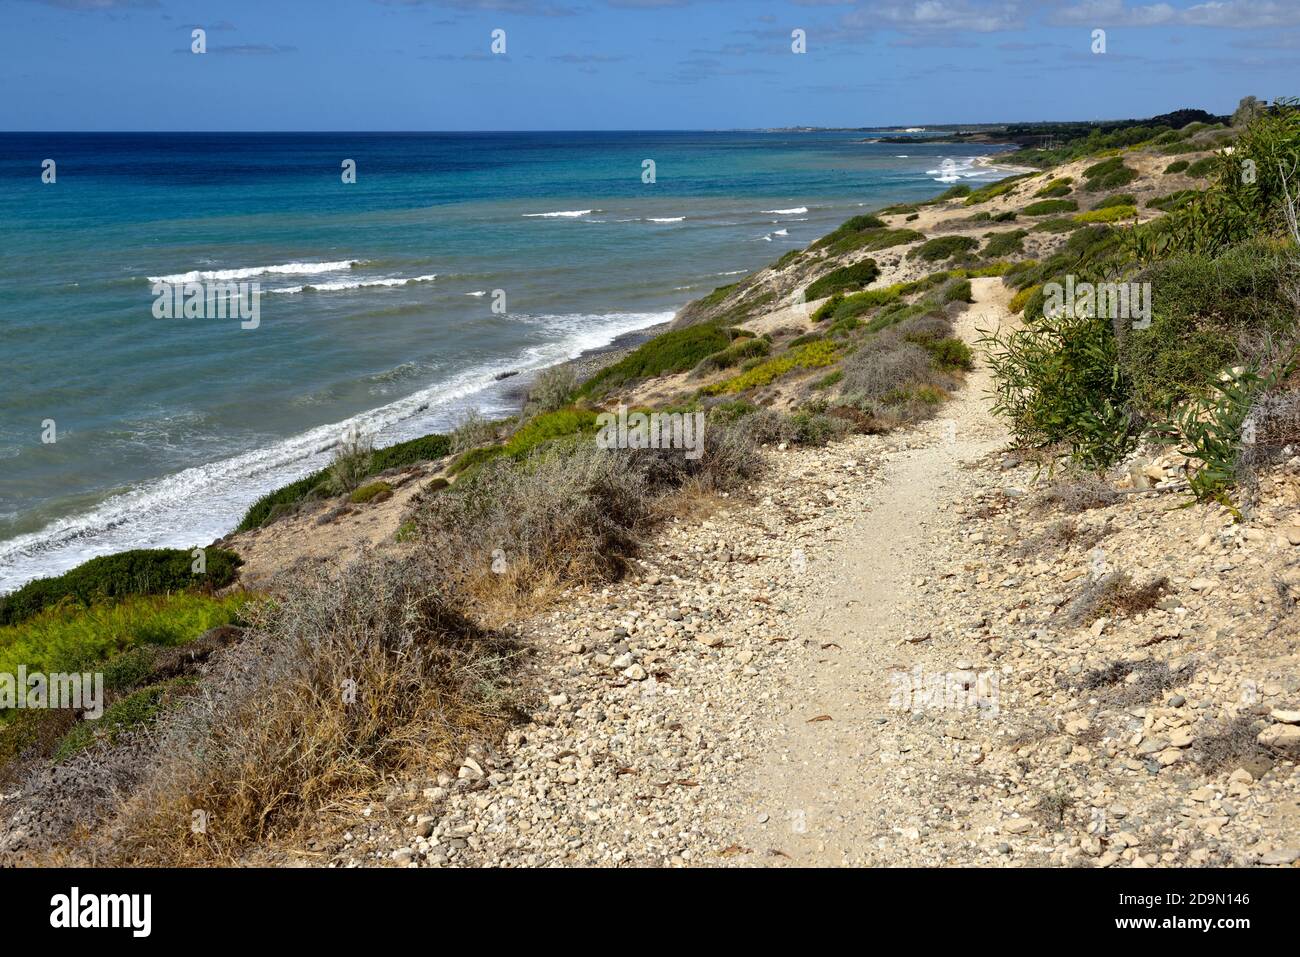 Sentier côtier le long de la mer Méditerranée près du rocher d'Aphrodite, Chypre Banque D'Images